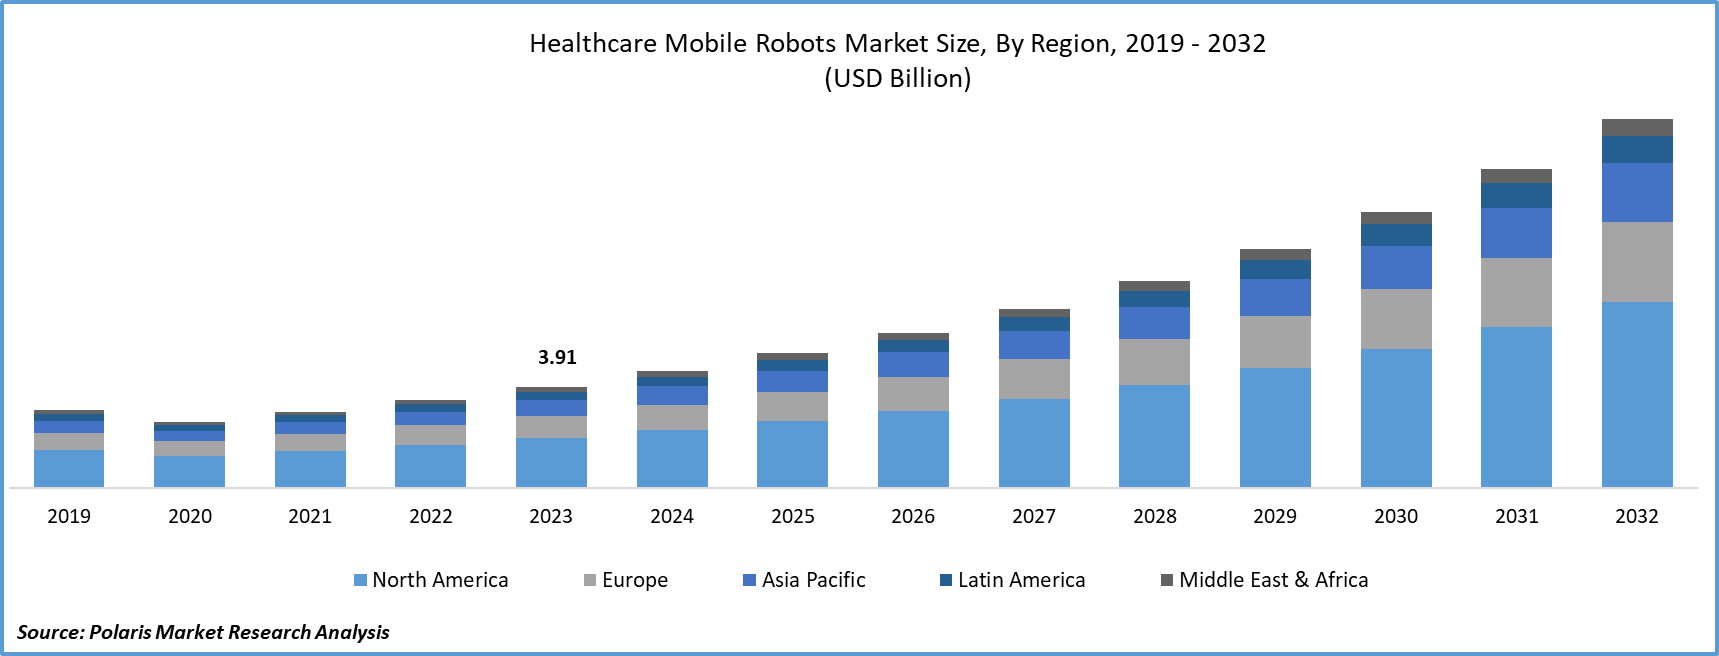 Healthcare Mobile Robots Market Size